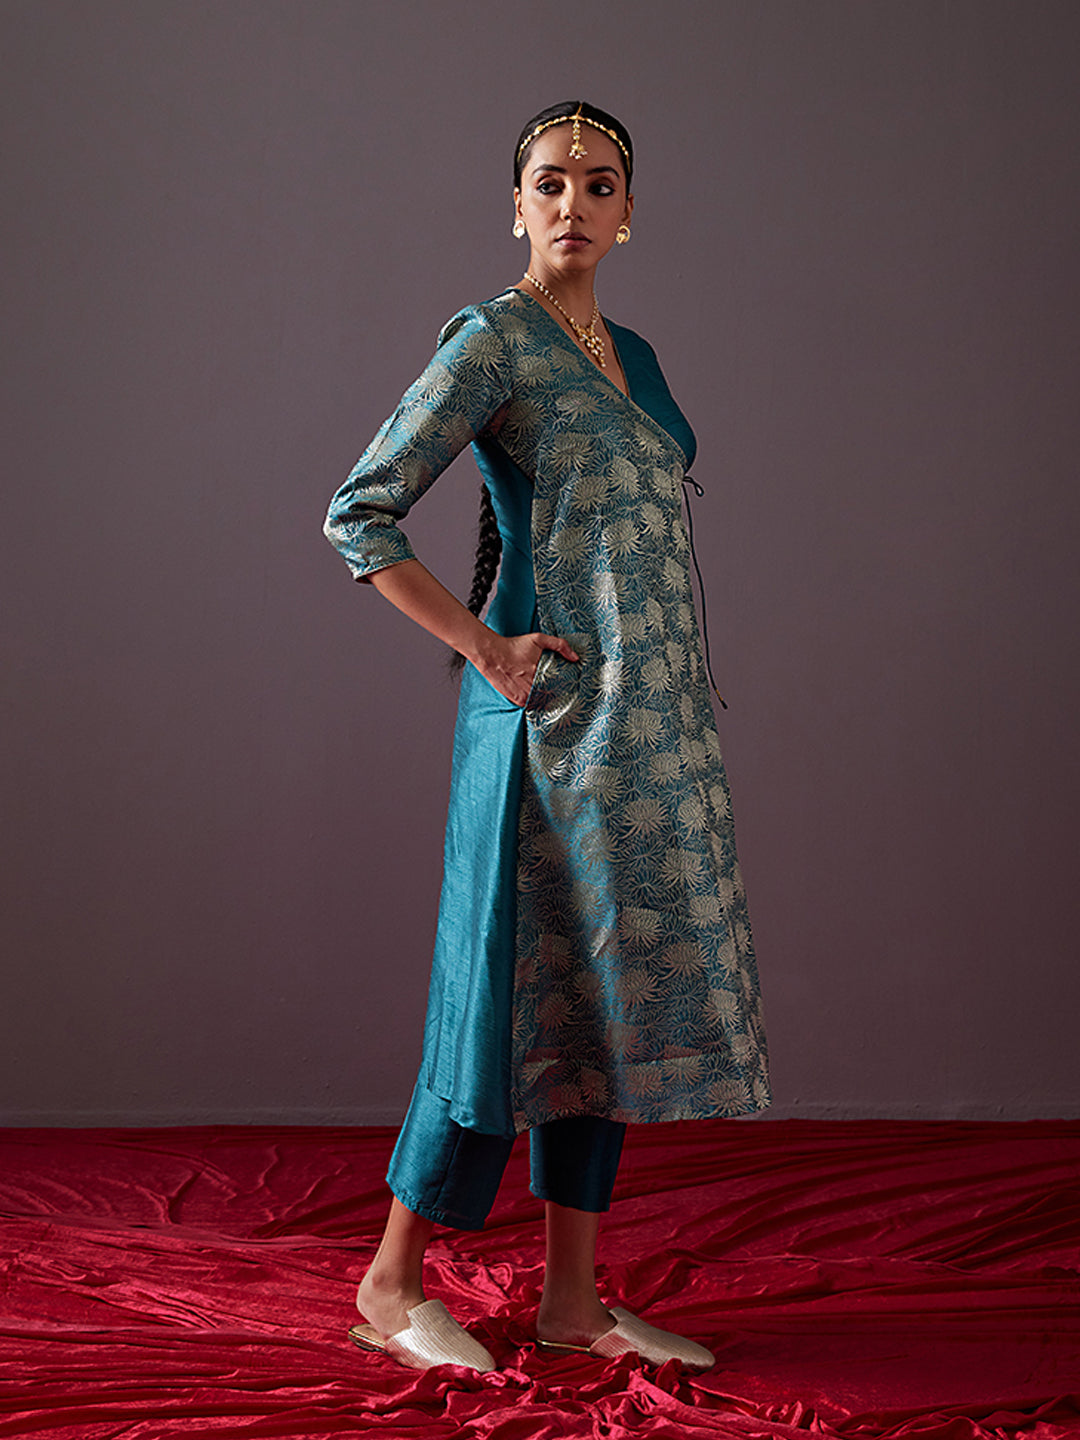 Banarasi zari angrakha kurta with dori tie up-Teal blue